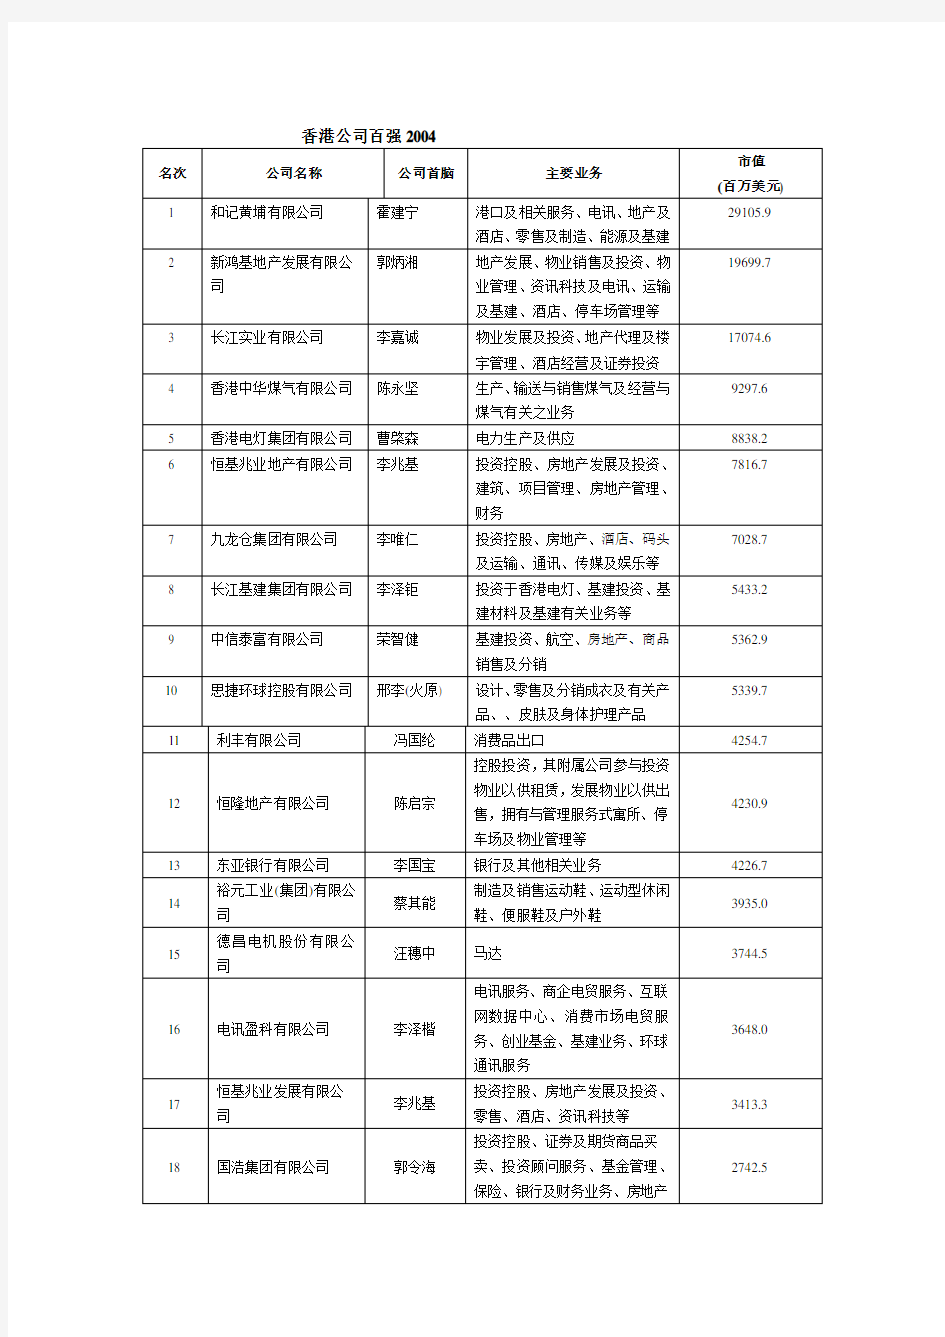 香港公司100强排行榜